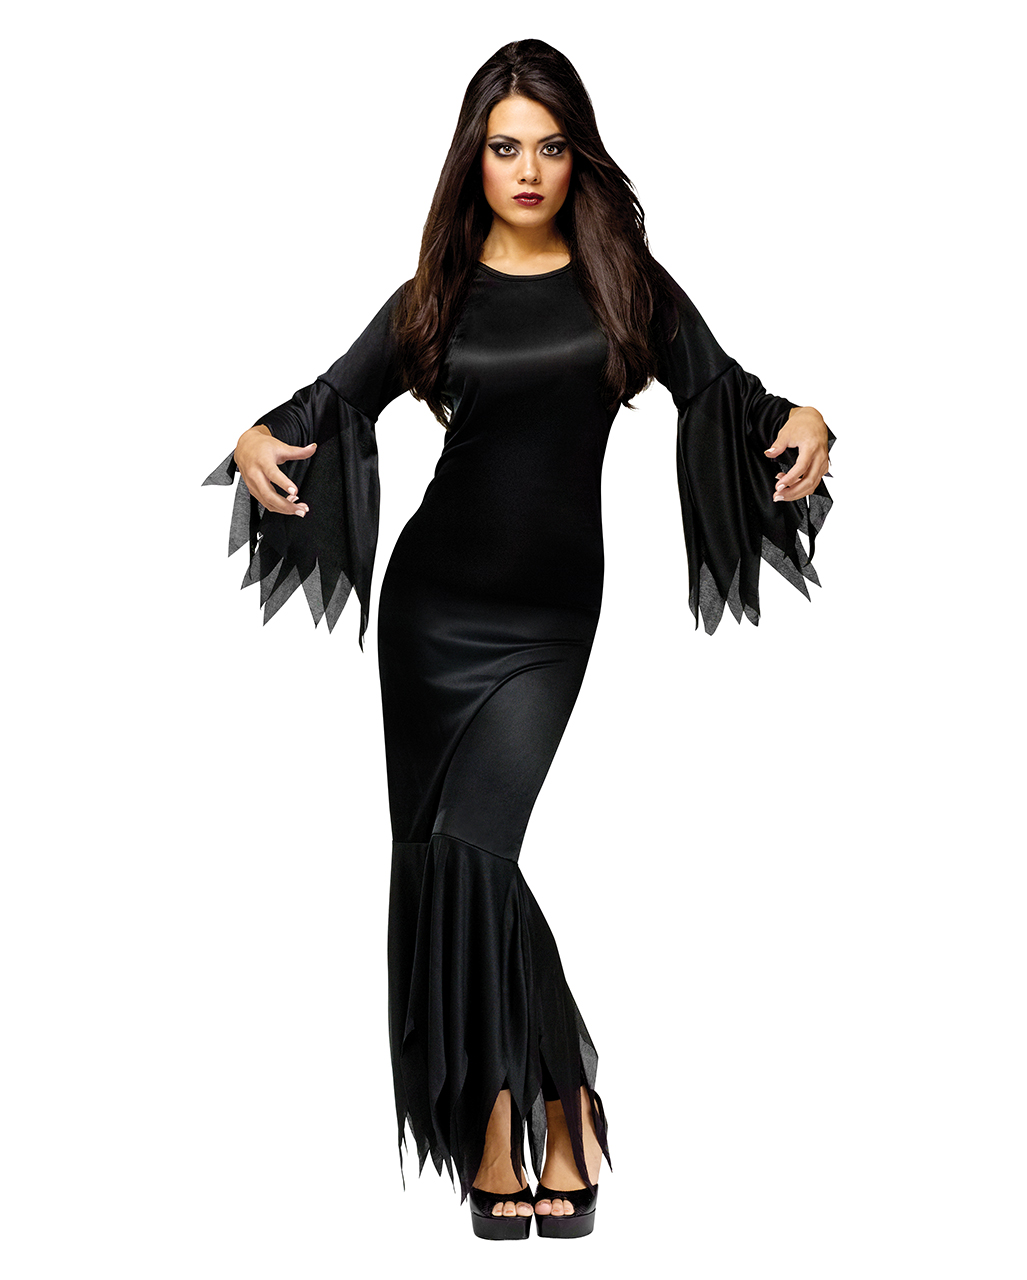 Madame Morticia Kostüm für Halloween & Fasching